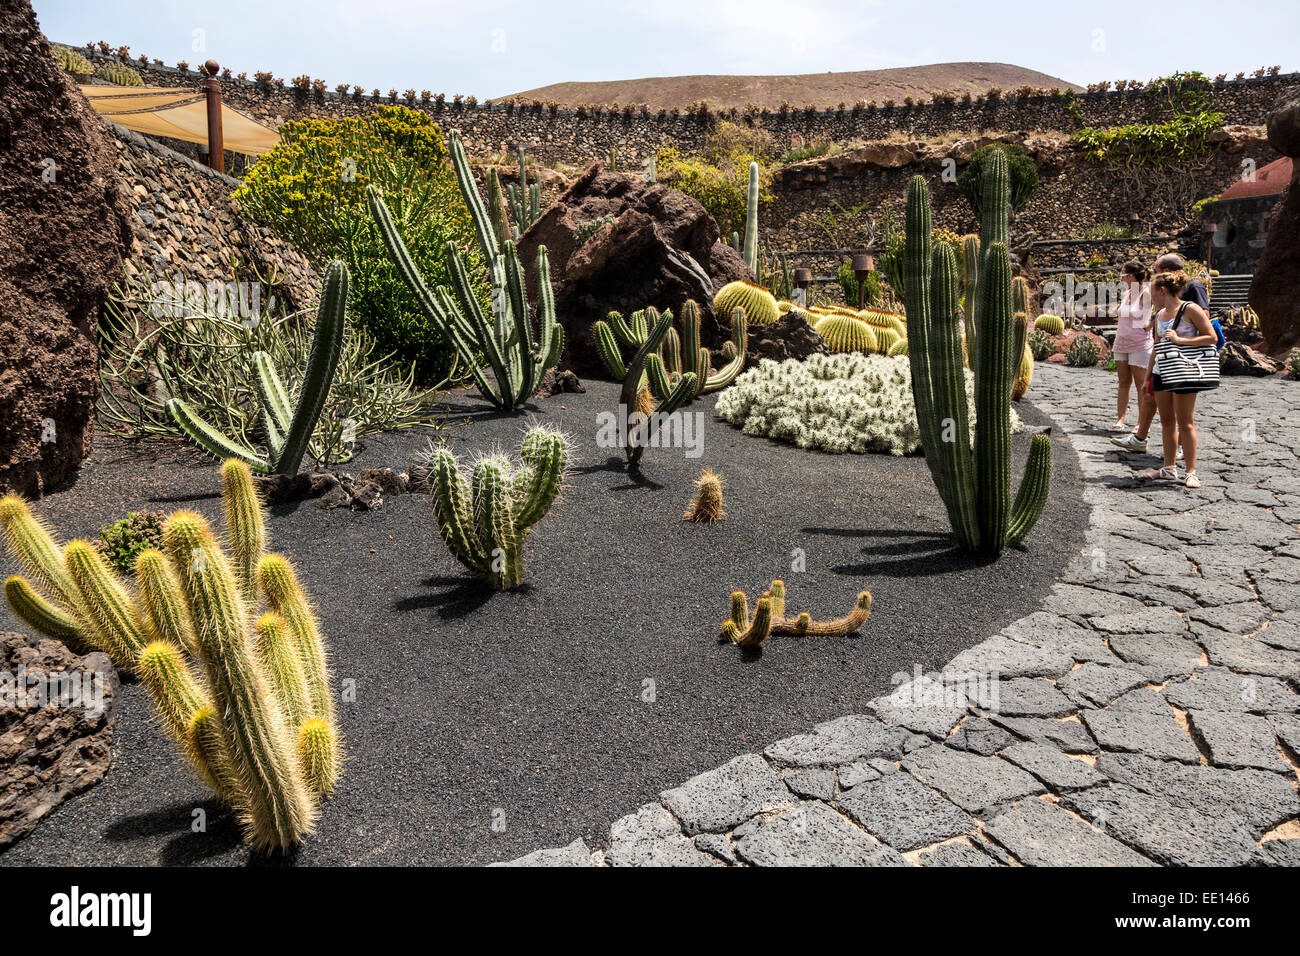 Les touristes dans le jardin de cactus, Lanzarote, îles Canaries, Espagne Banque D'Images